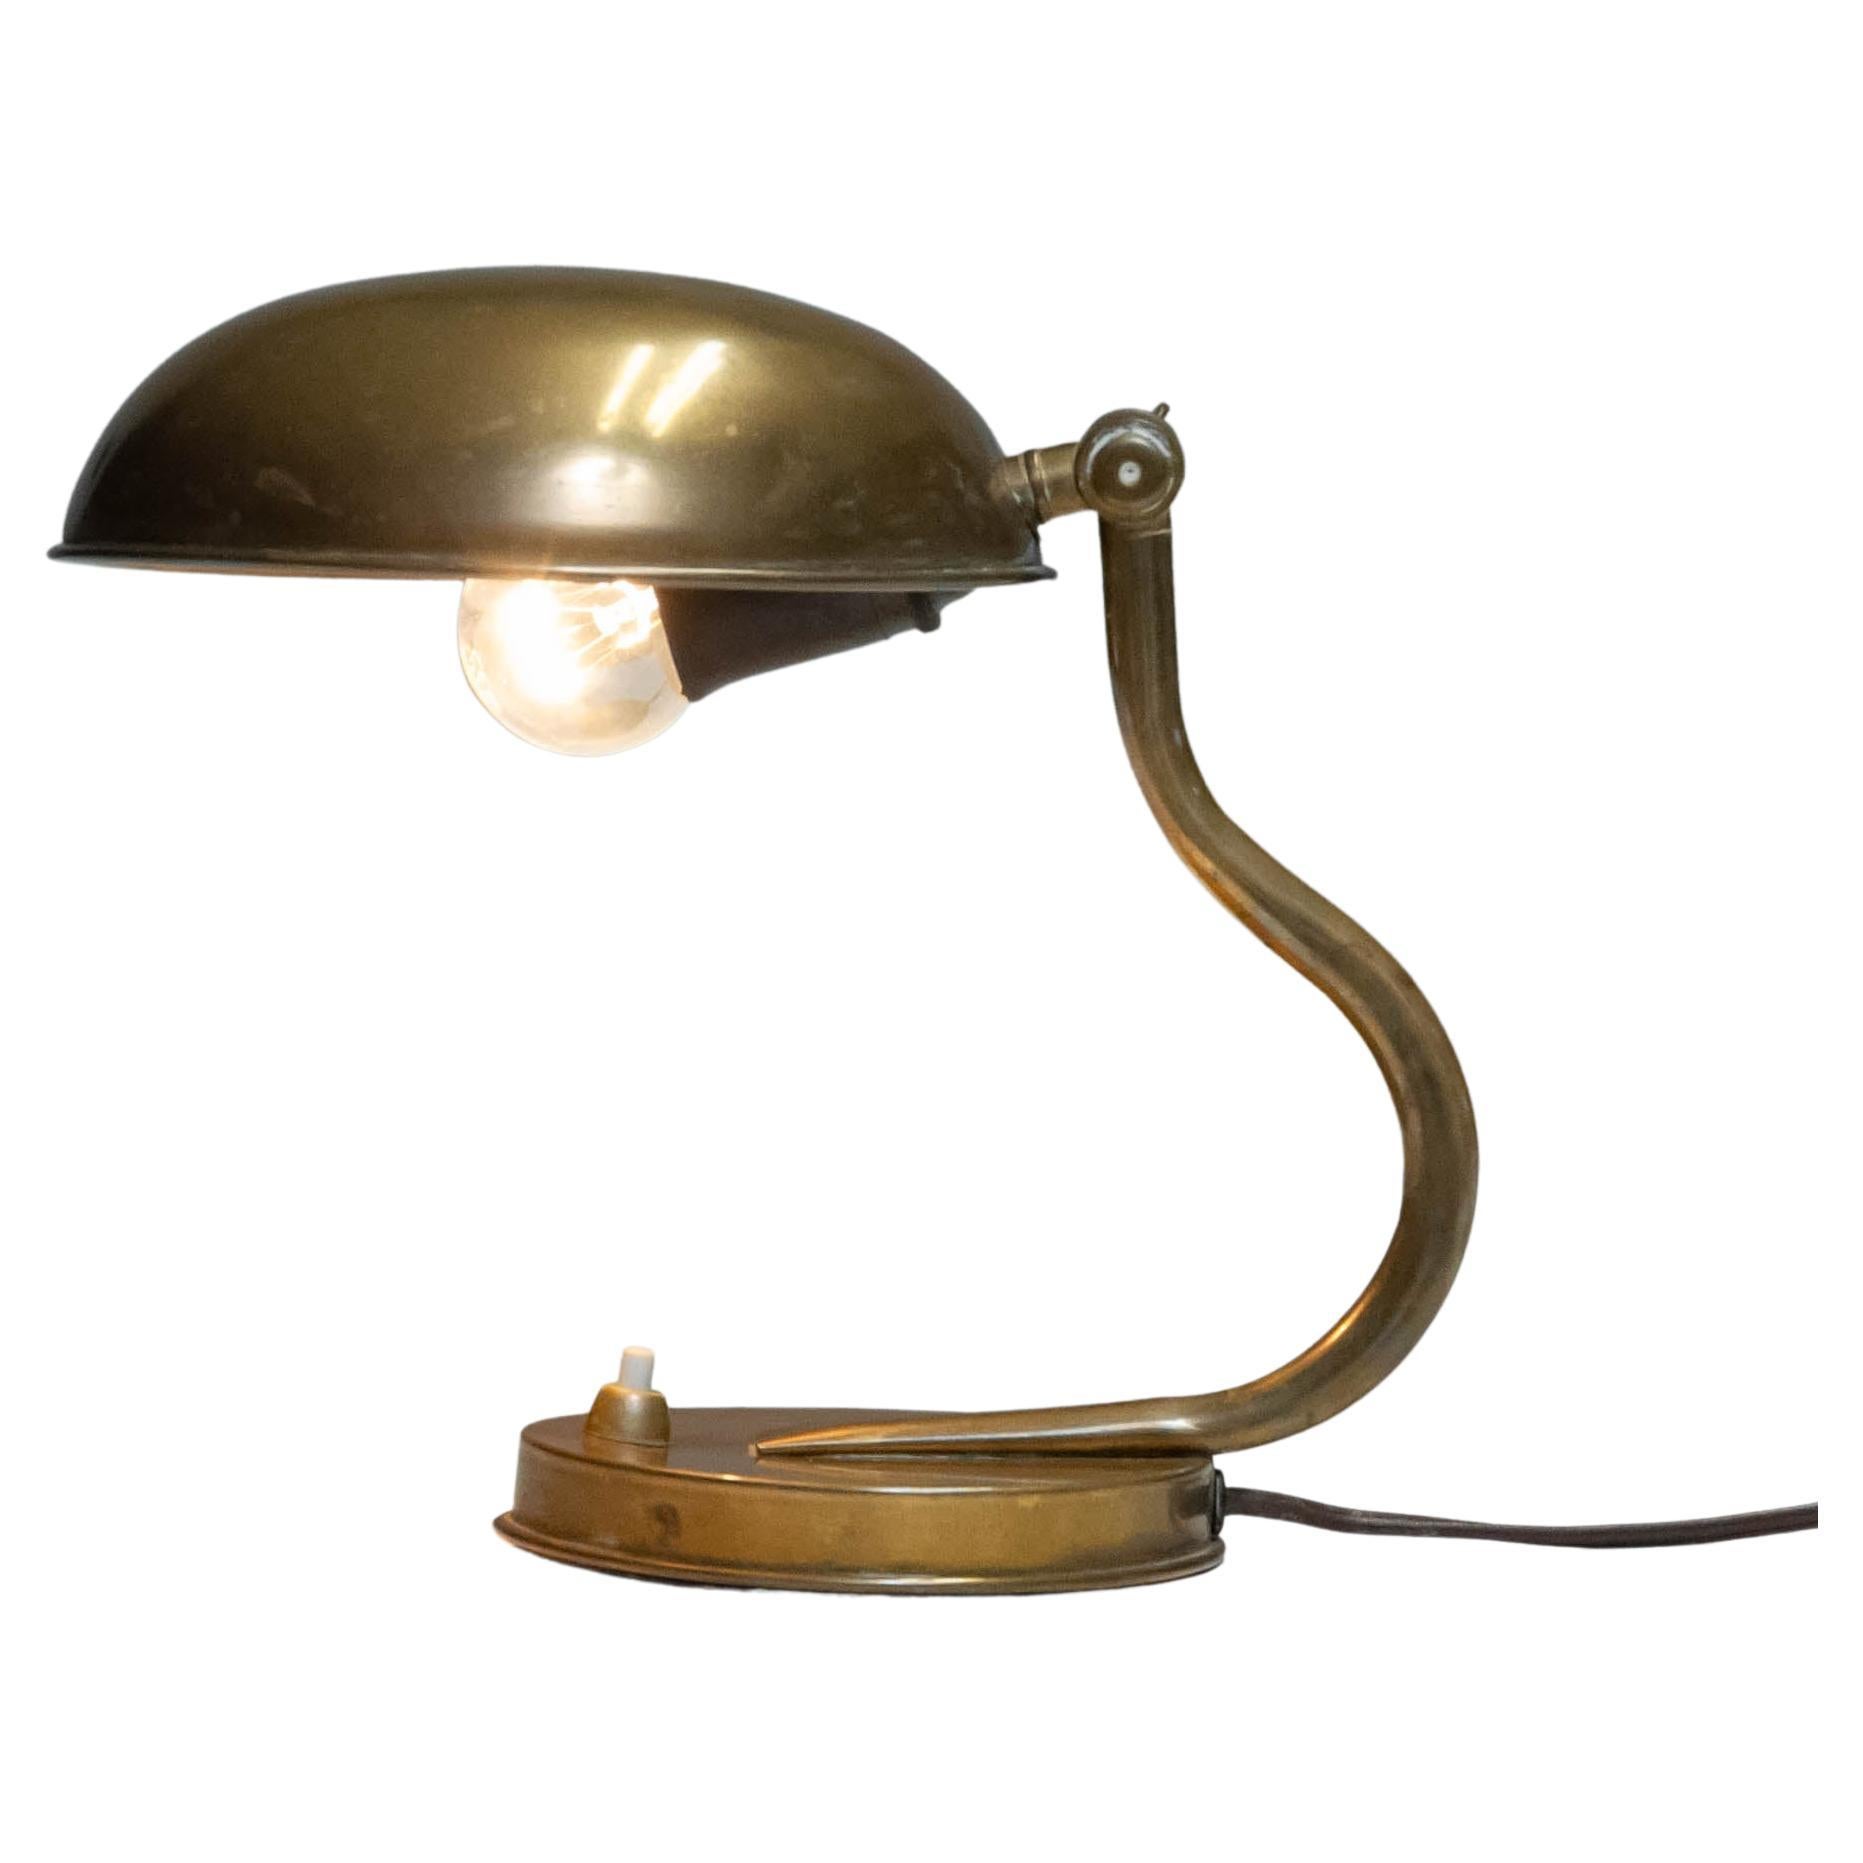 Lampe de table / bureau des années 1930-1940 avec abat-jour réglable en laiton par ASEA